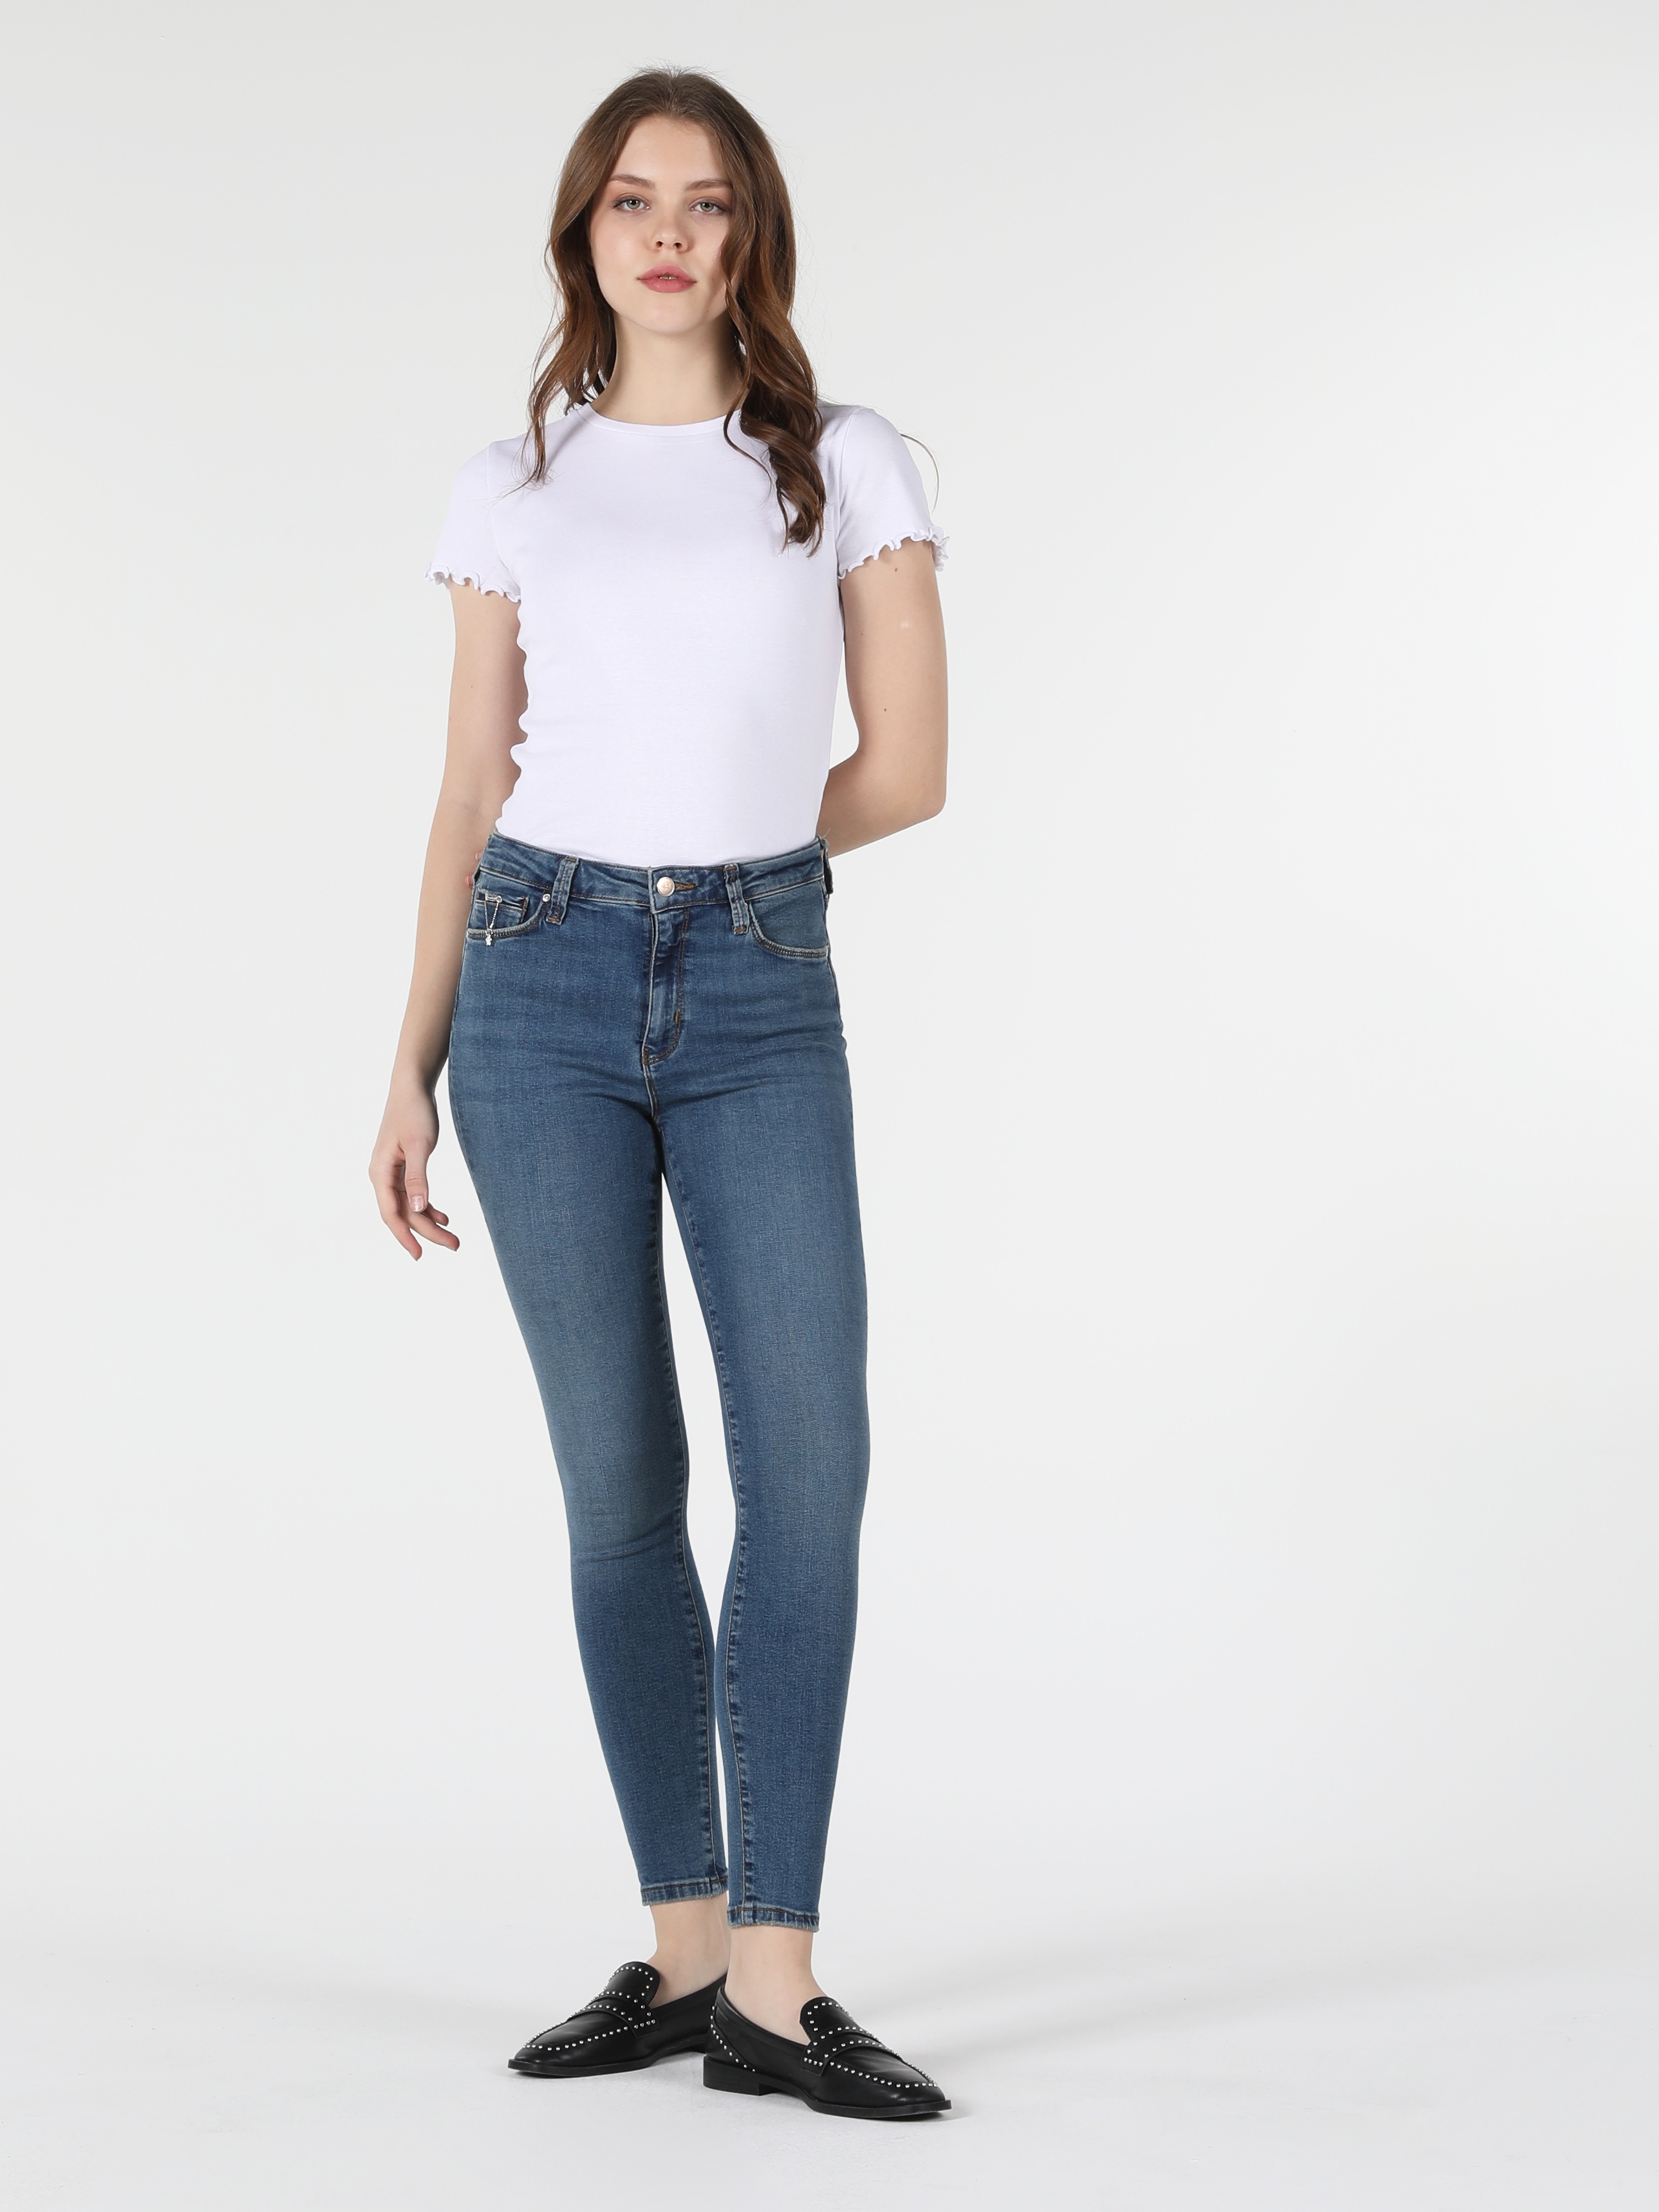 Afficher les détails de 759 Lara Pantalon En Jean Bleu Pour Femme, Coupe Super Slim, Taille Normale, Jambe Étroite